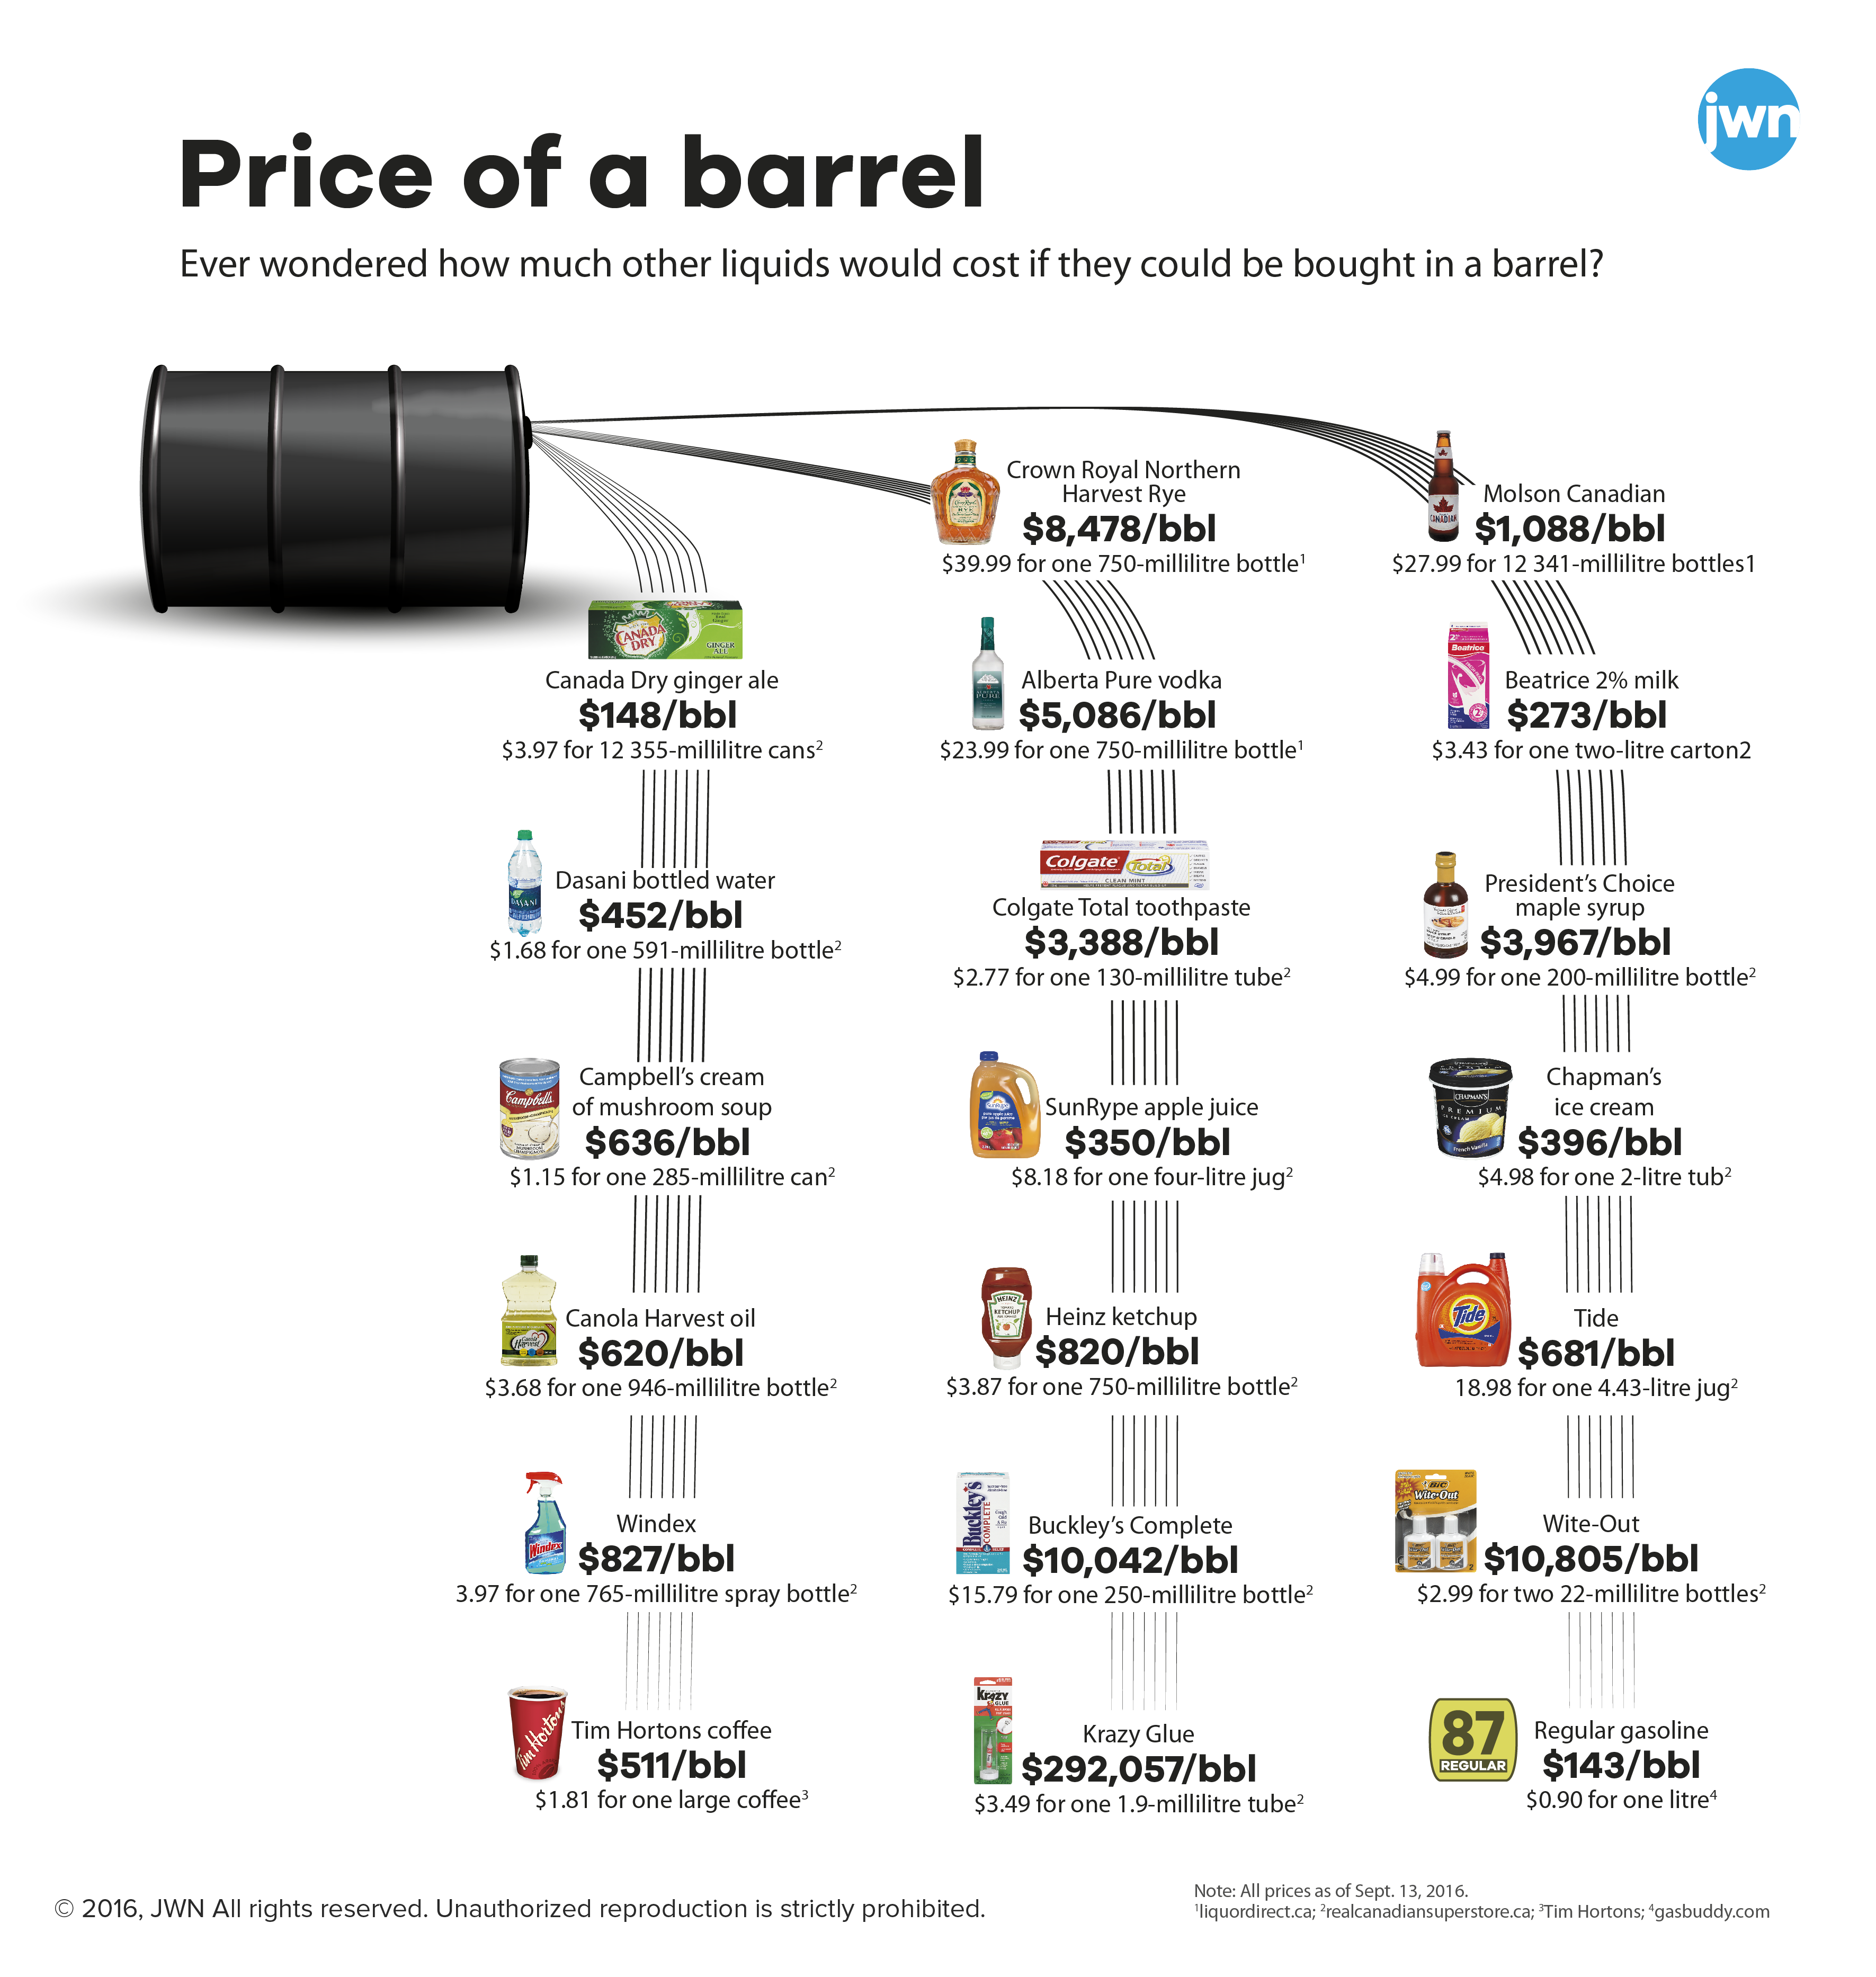 A Barrel of Oil